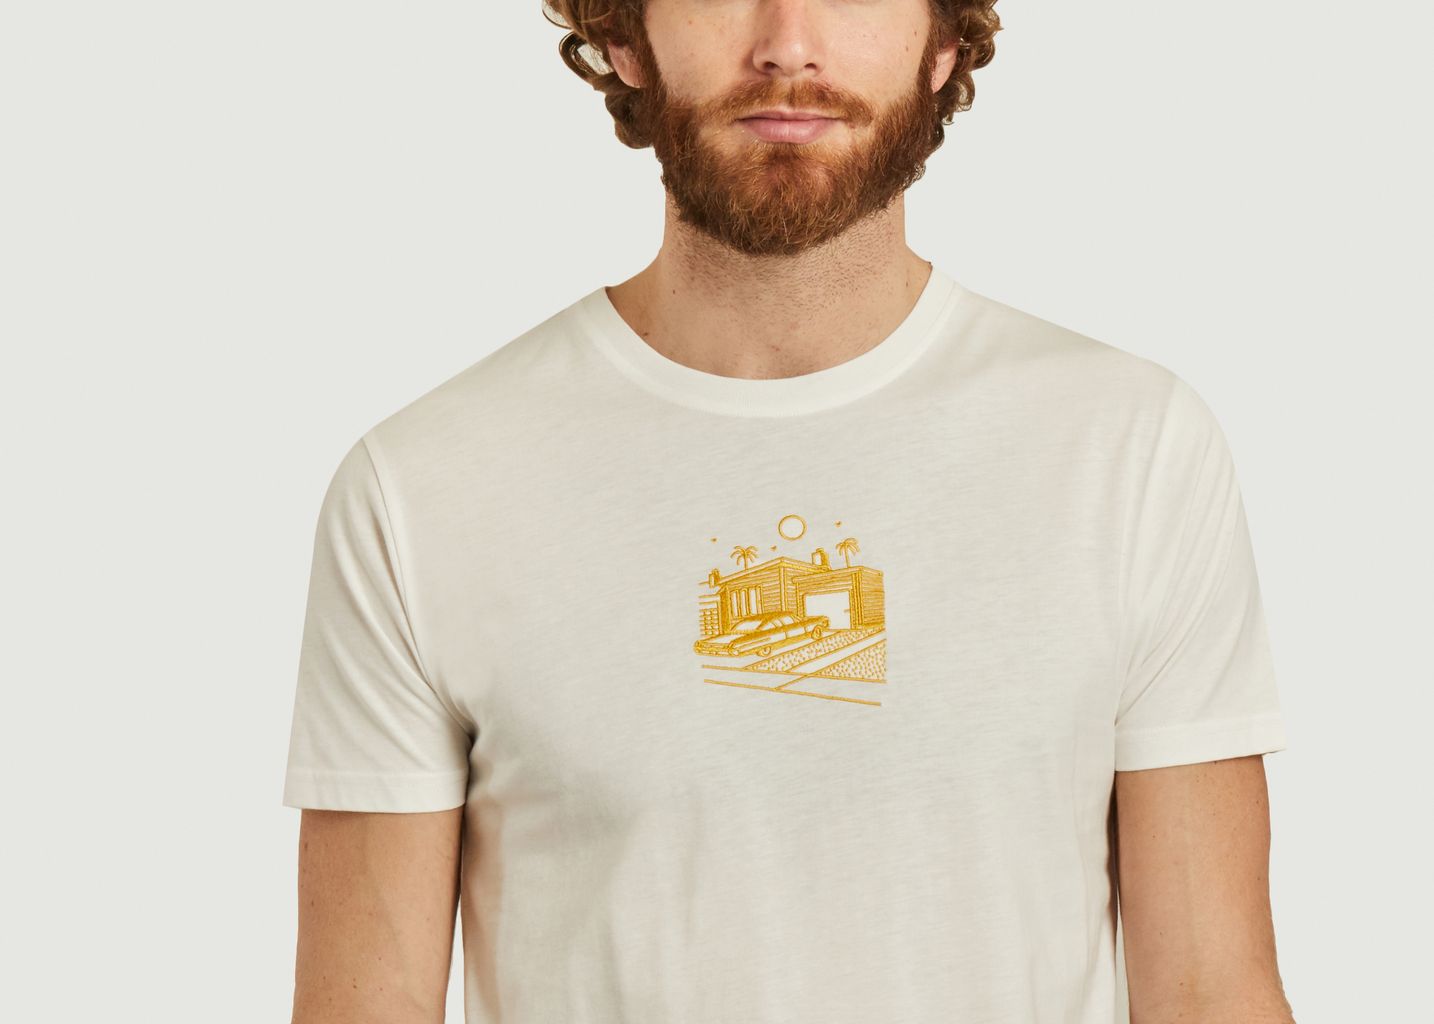 Frontyard T-shirt - Olow